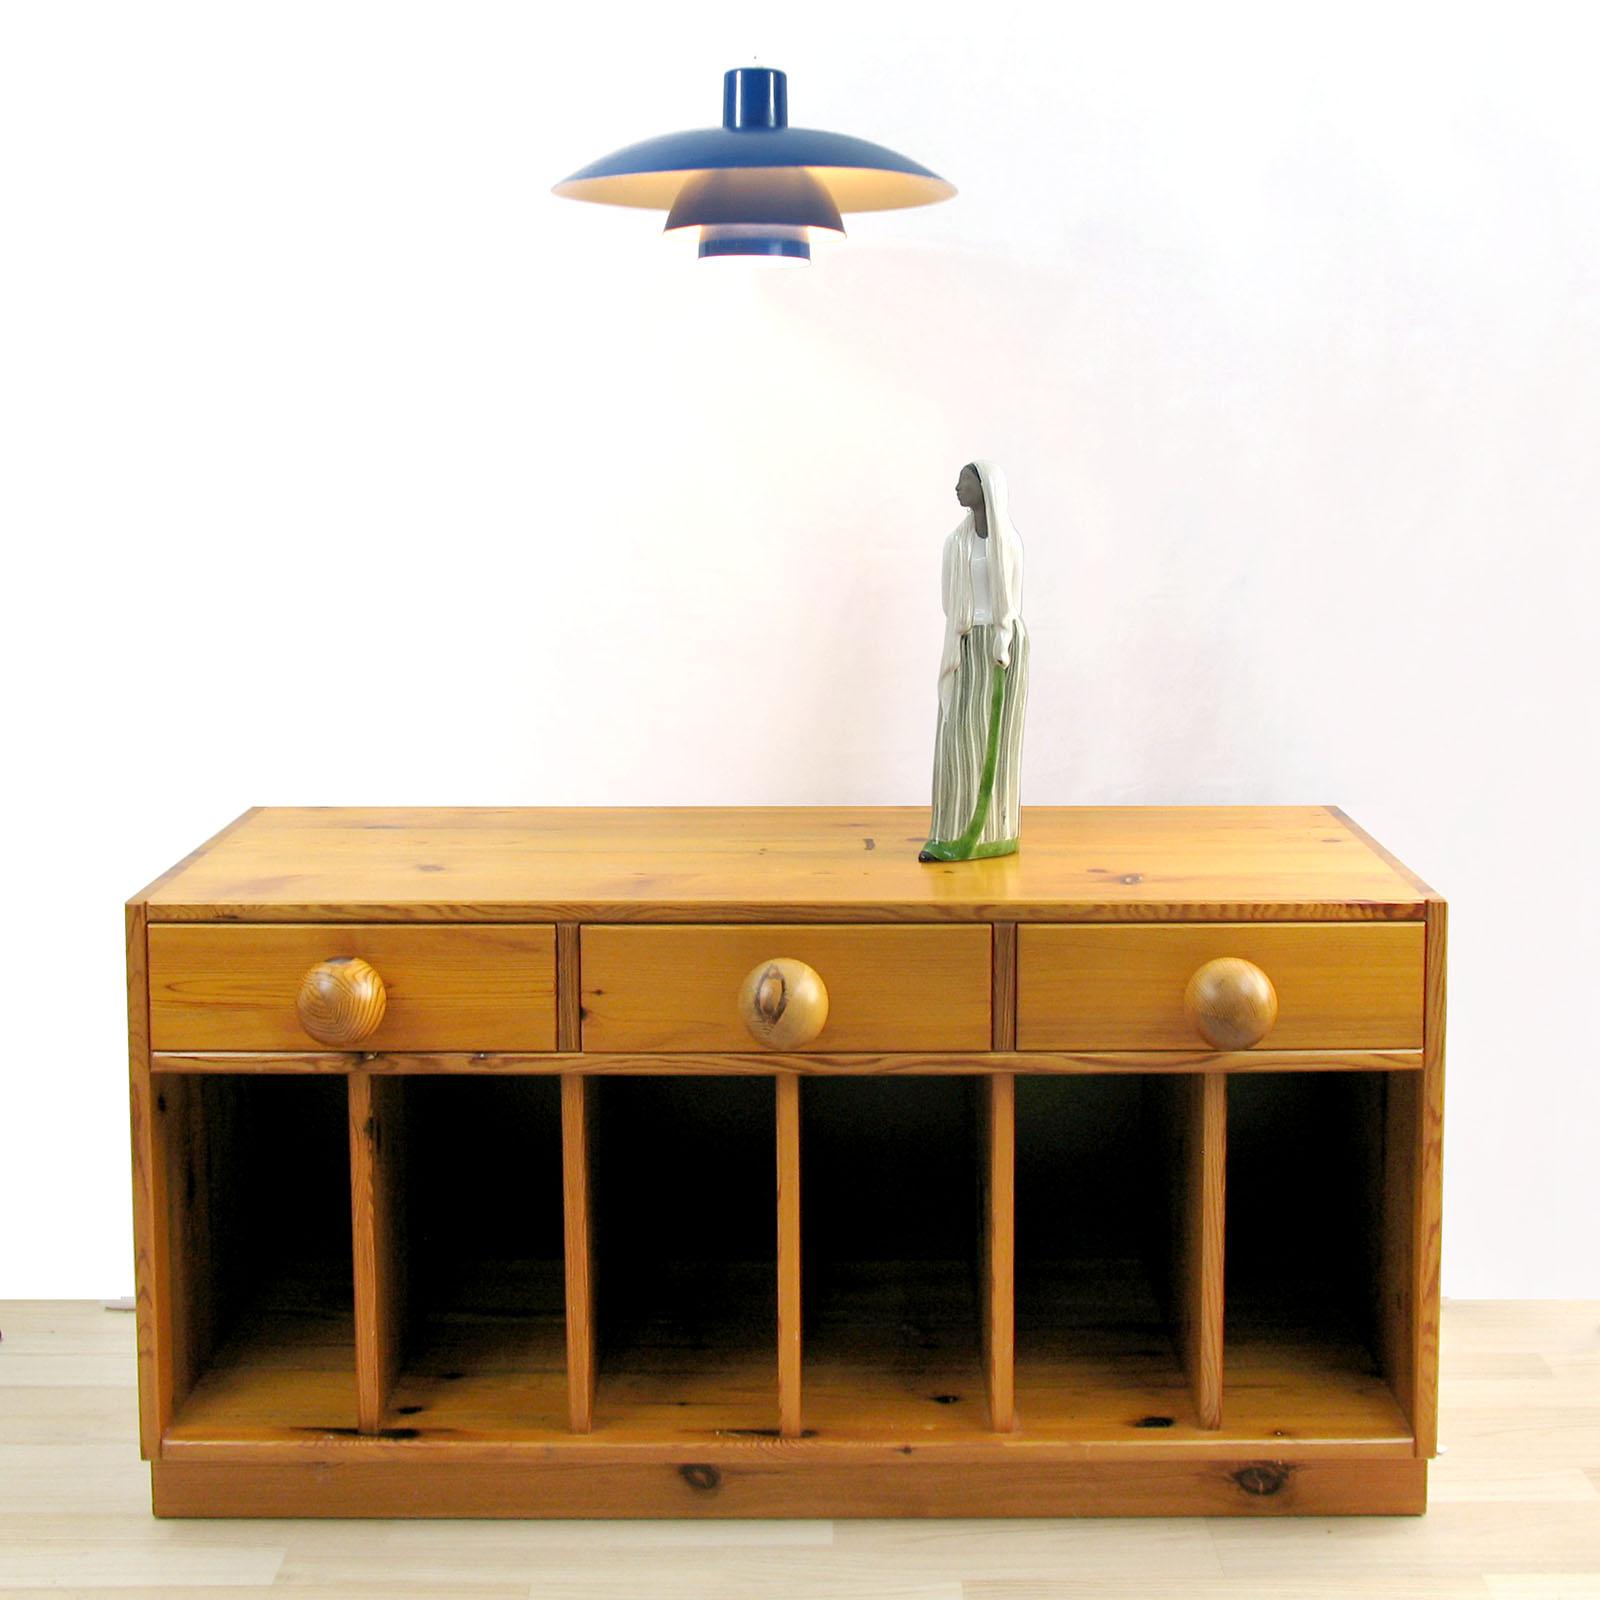 Rare banc à tiroirs ou petit buffet en pin par Sven Larsson, Suède, vers 1970.
Cette pièce est un excellent exemple de l'ère des meubles en pin robuste qui s'est popularisée en Suède à la fin des années 1960. Le buffet est fabriqué en pin massif